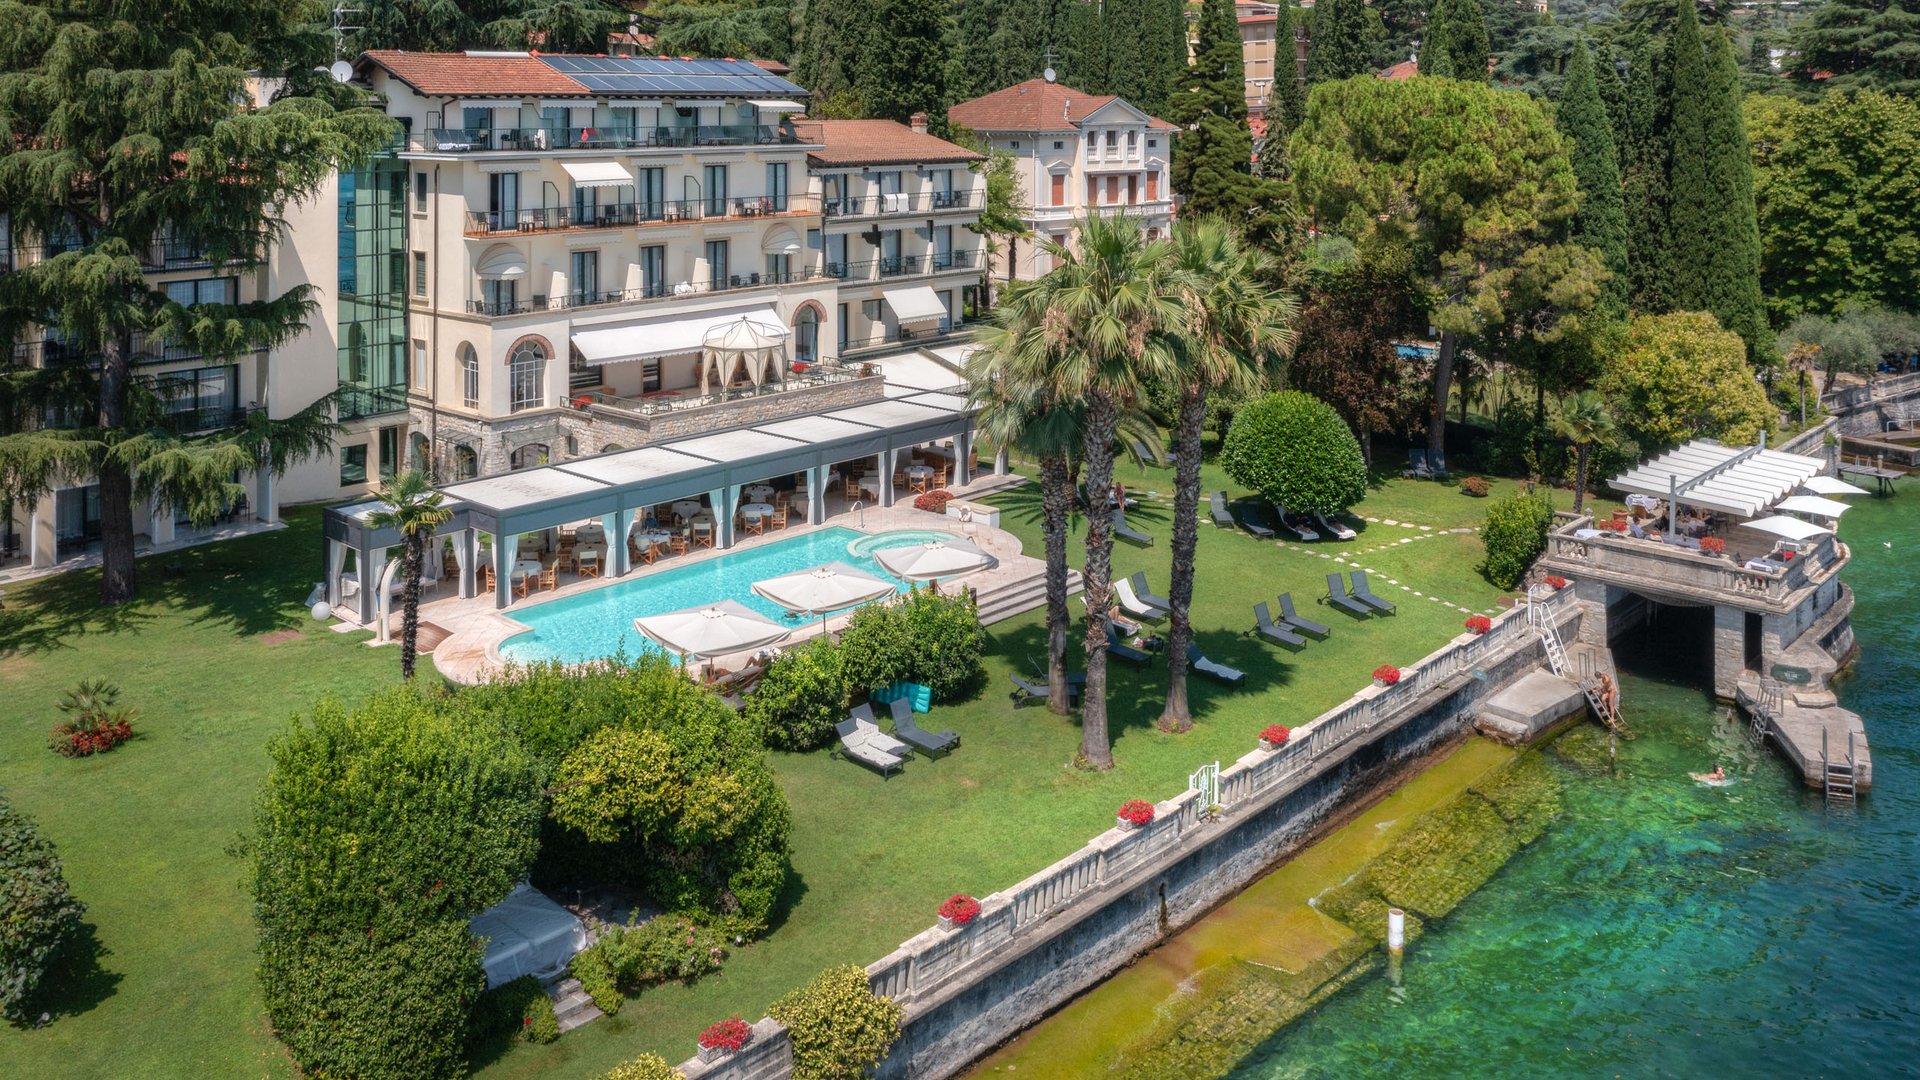 Willkommen in Eurem Hotel in Gardone Riviera!